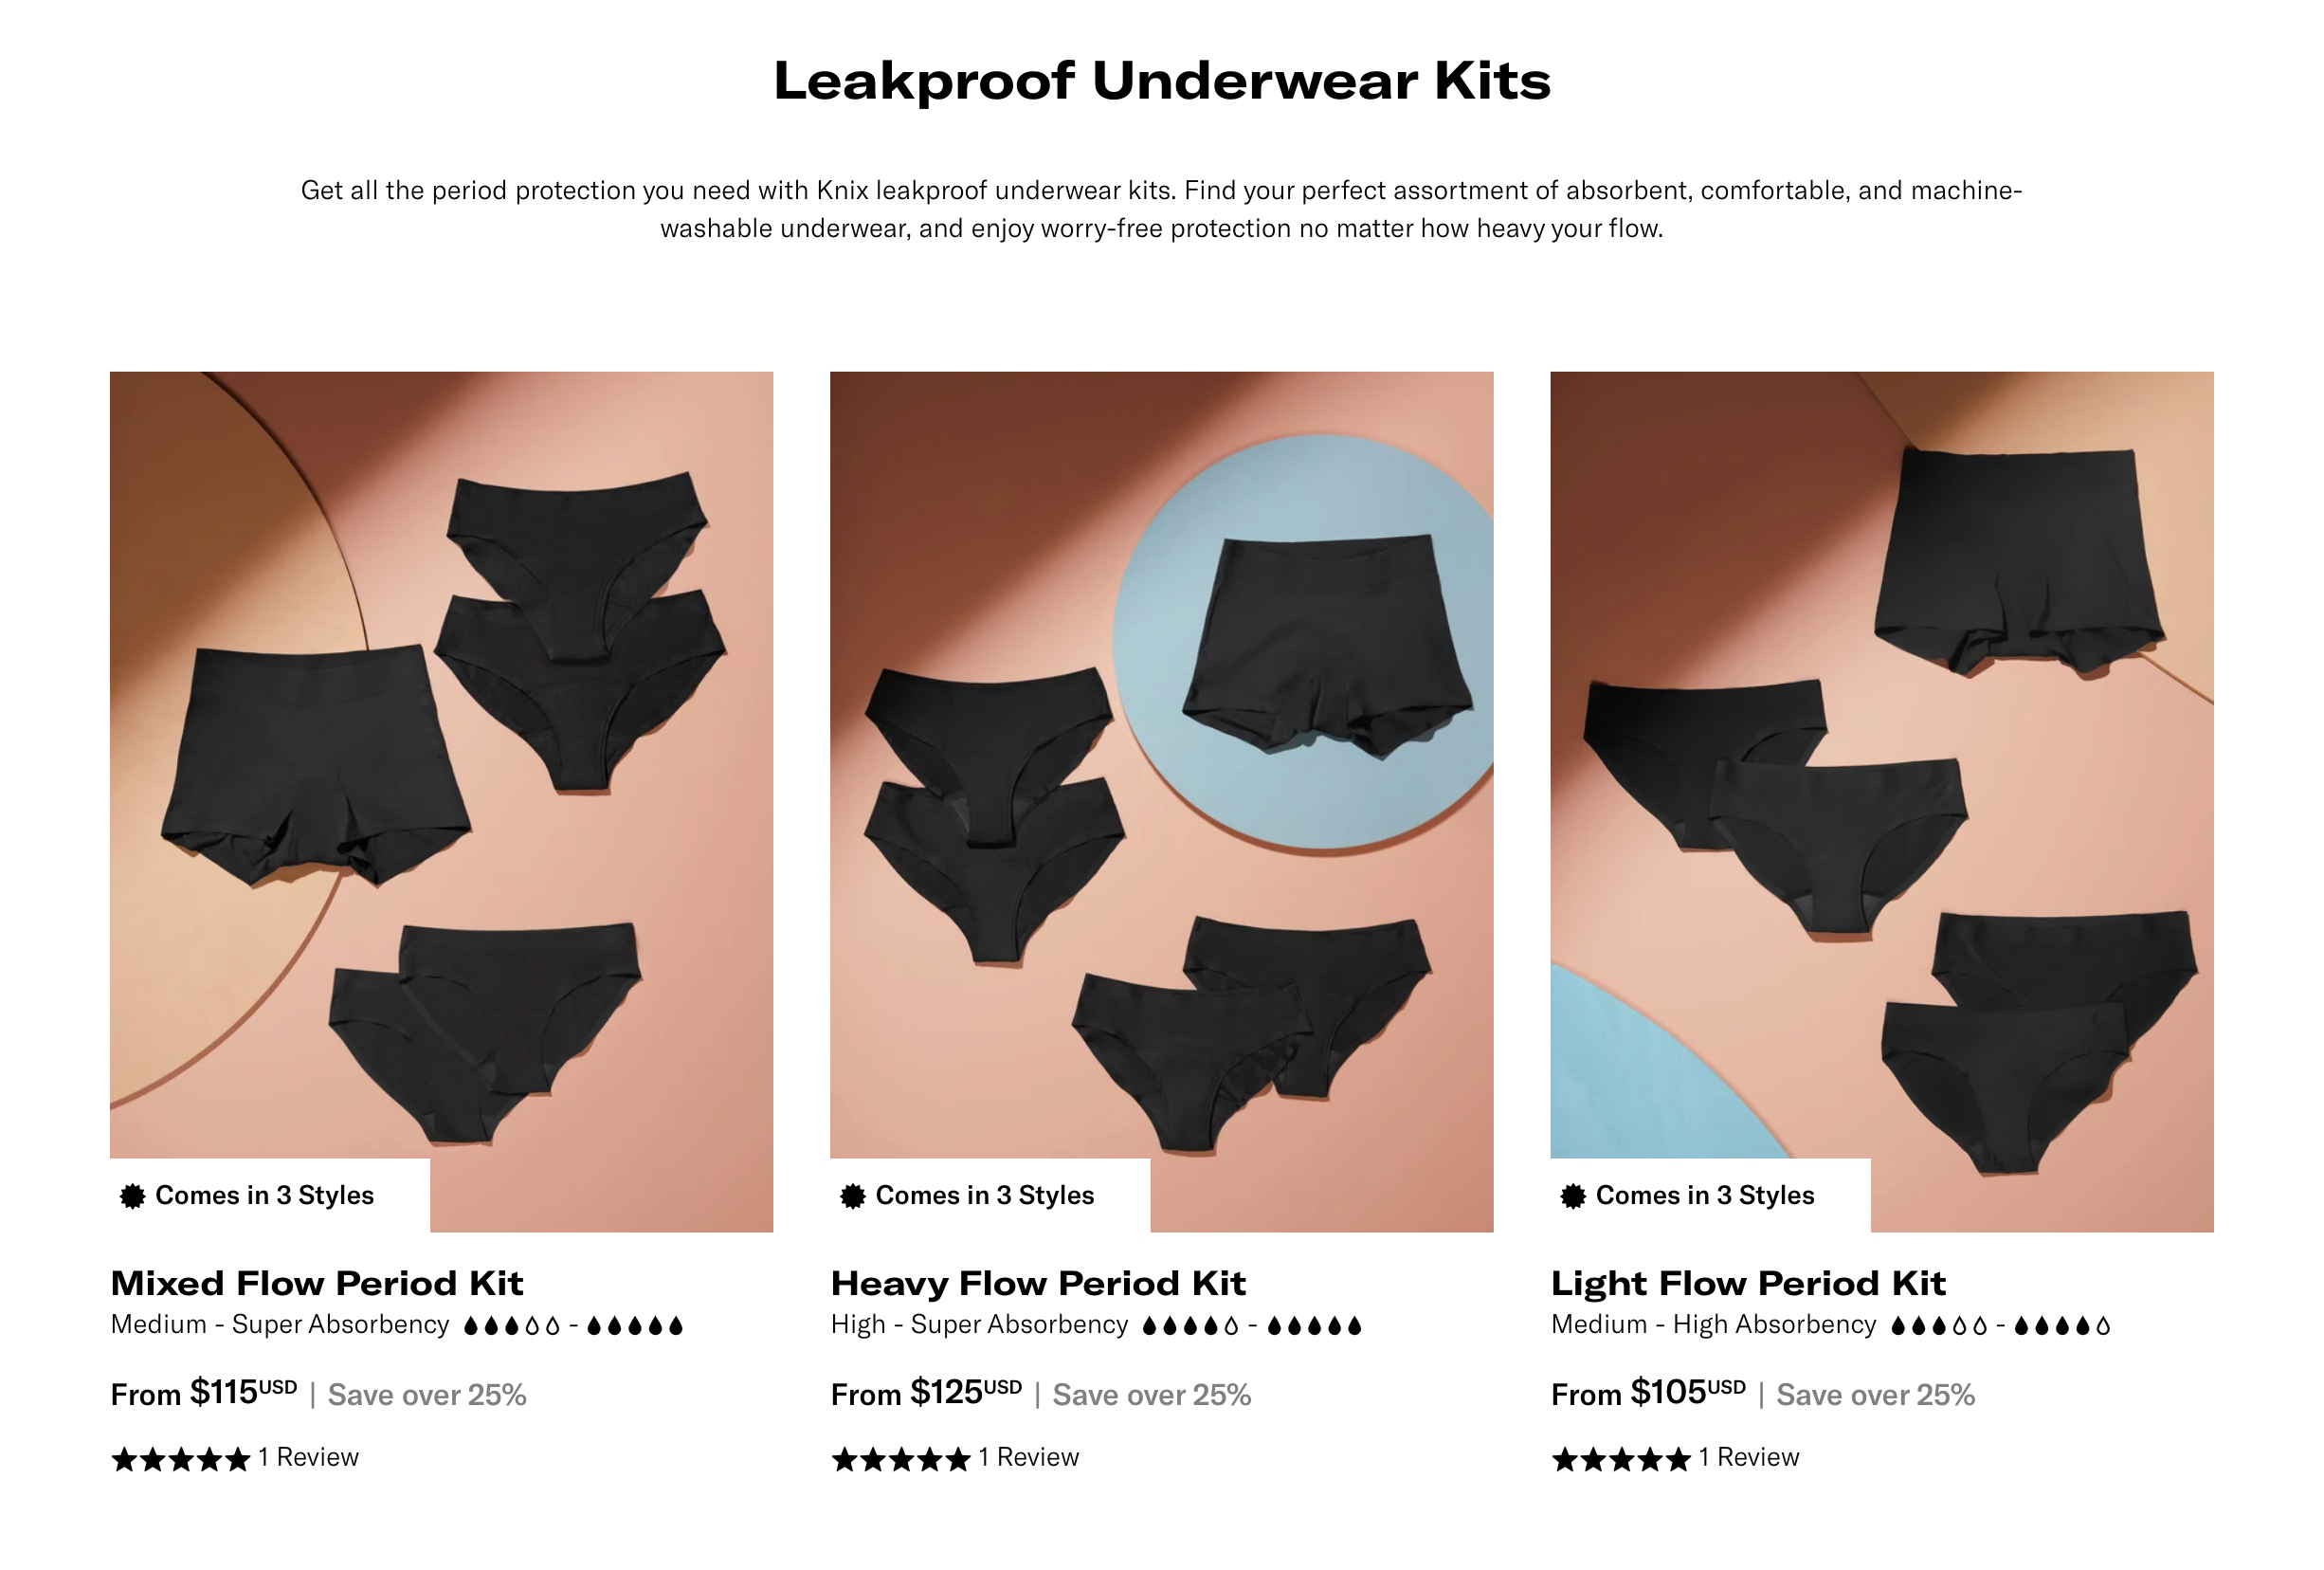 Knix leakproof underwear kits